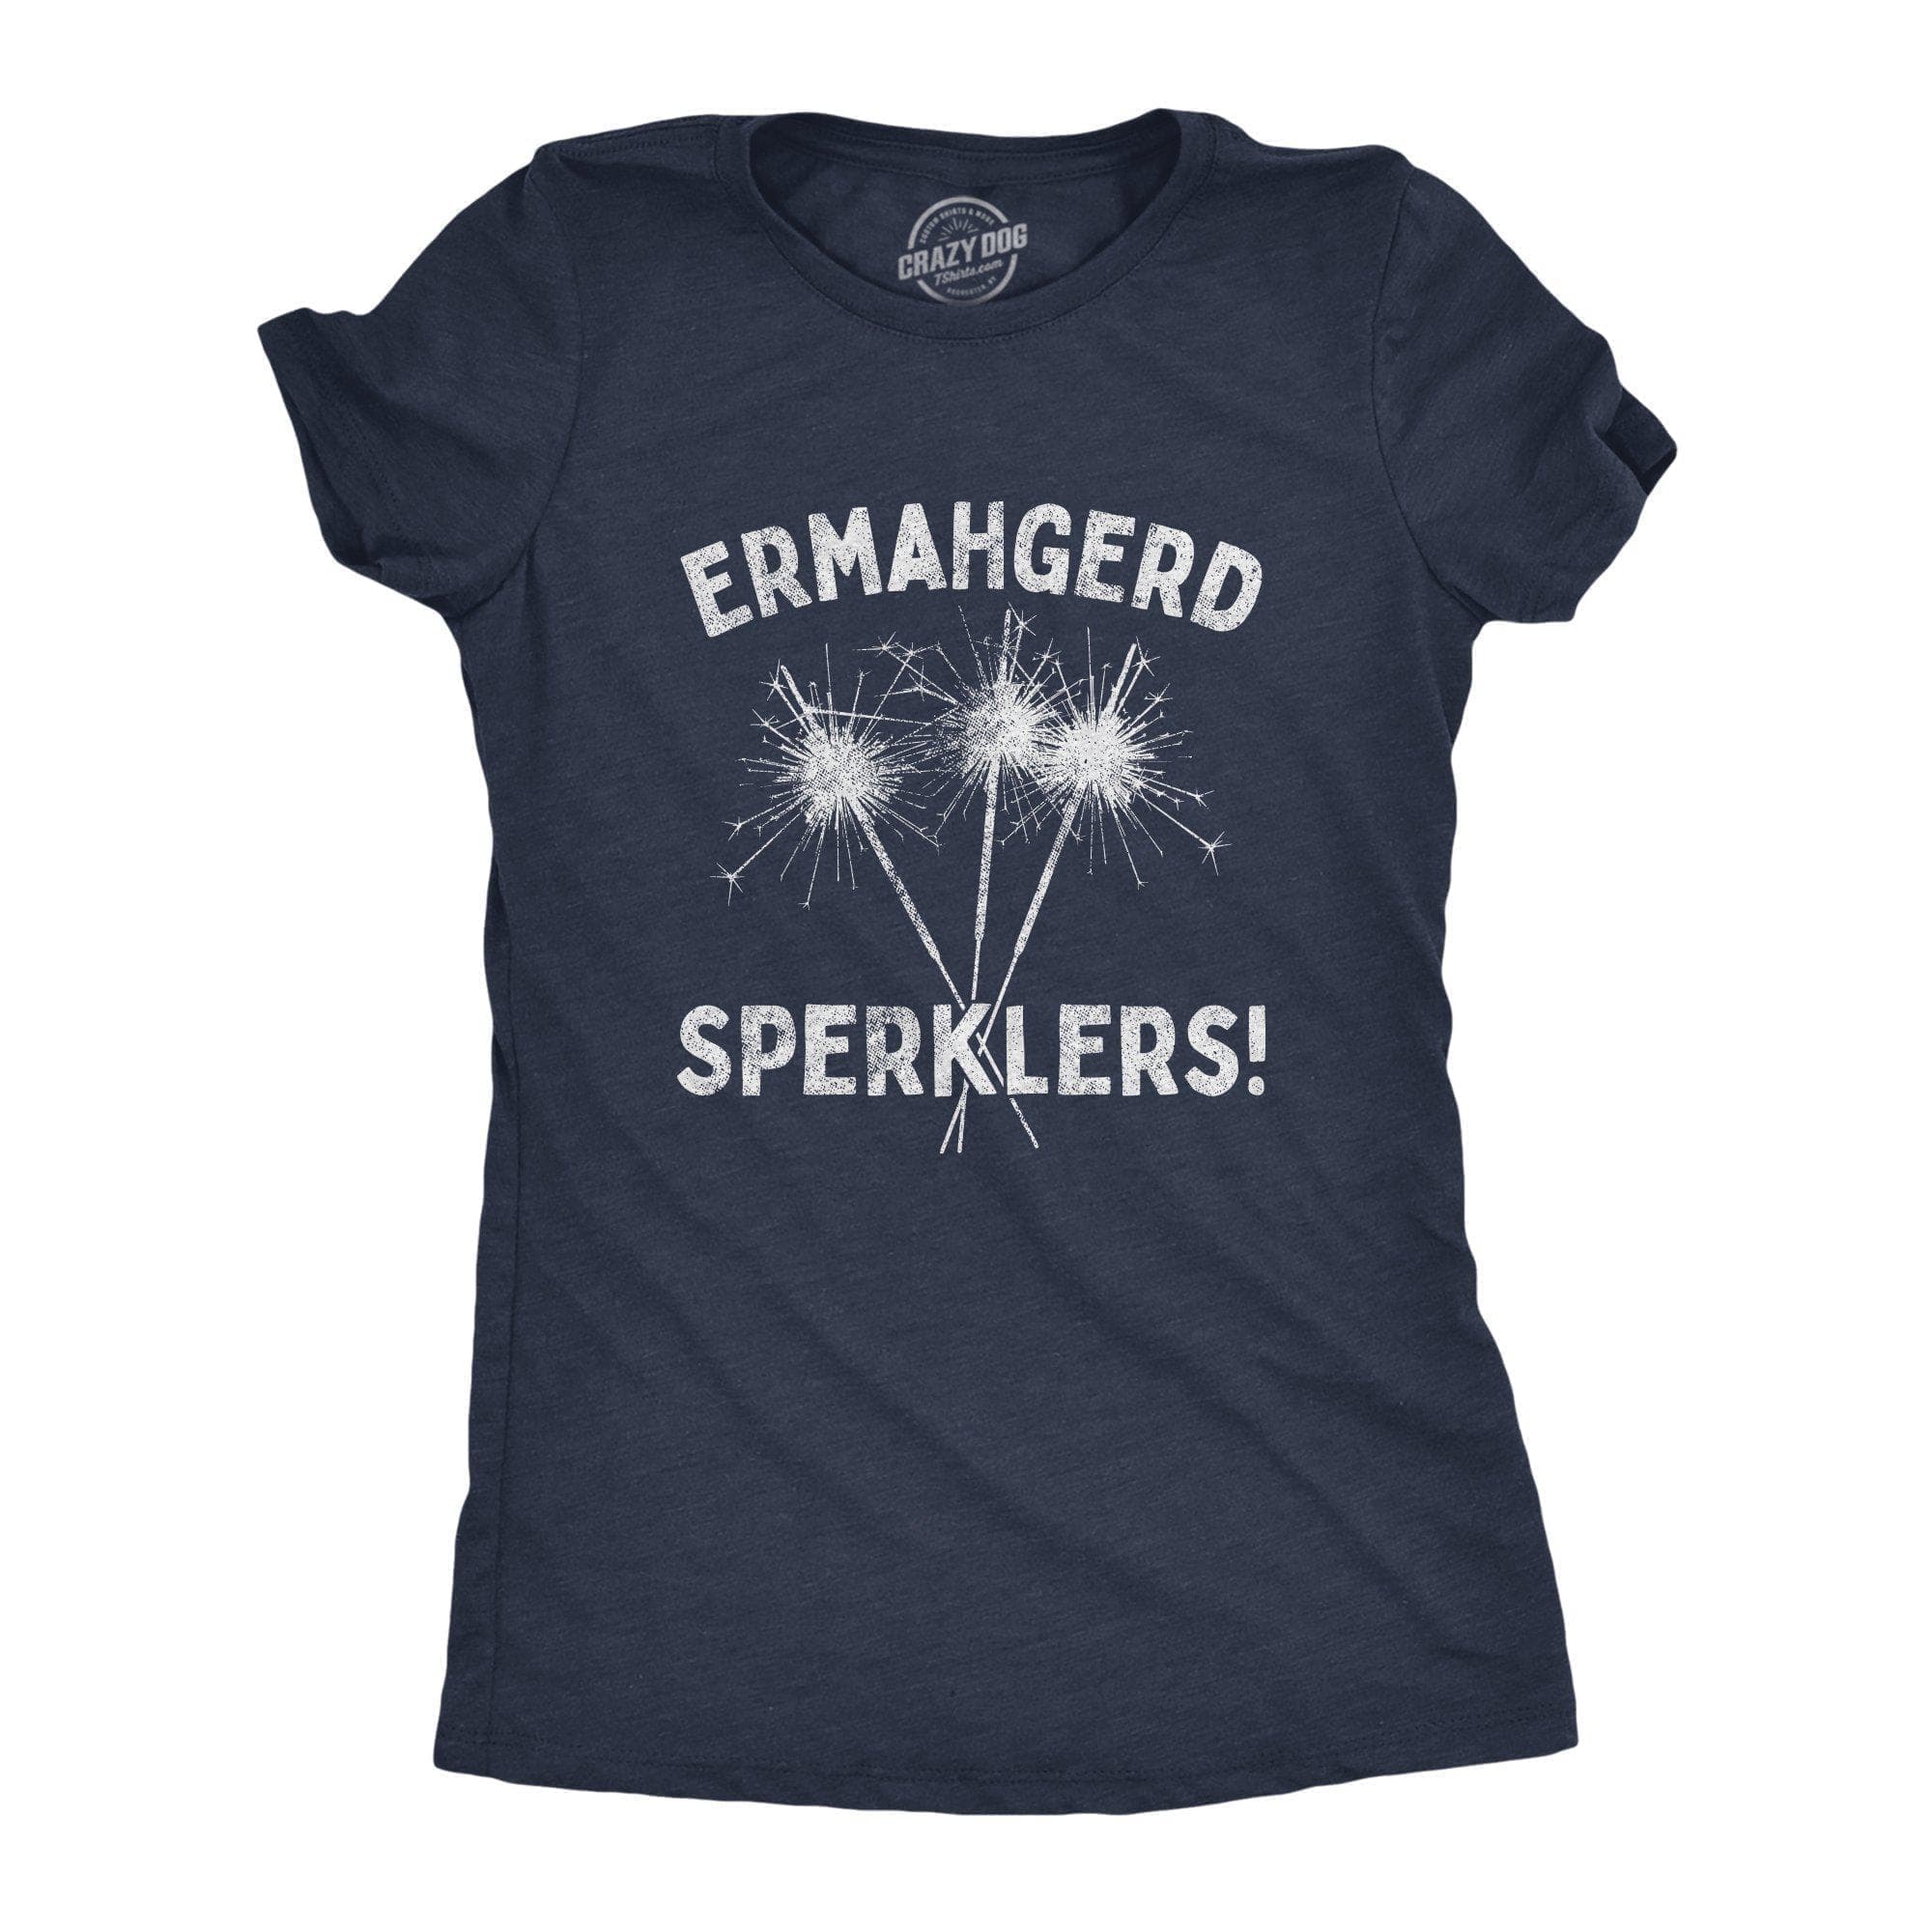 Ermahgerd Sperklers Women's Tshirt - Crazy Dog T-Shirts